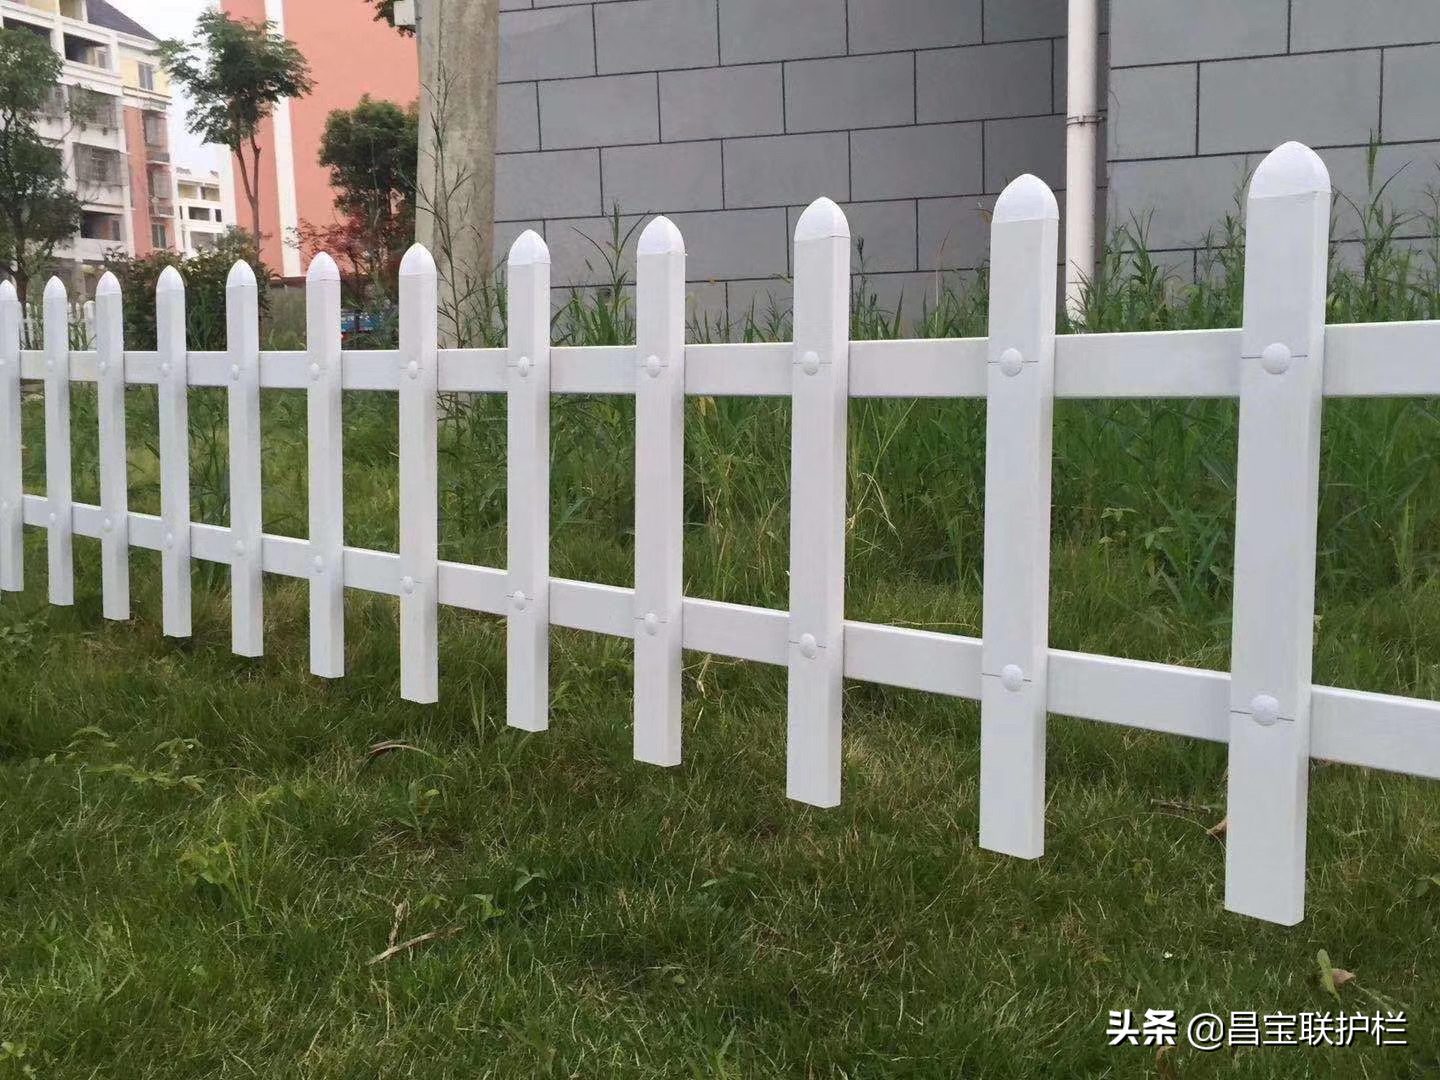 昌宝联护栏 | pvc 塑钢草坪护栏概述与 pvc 塑钢草坪护栏安装方法